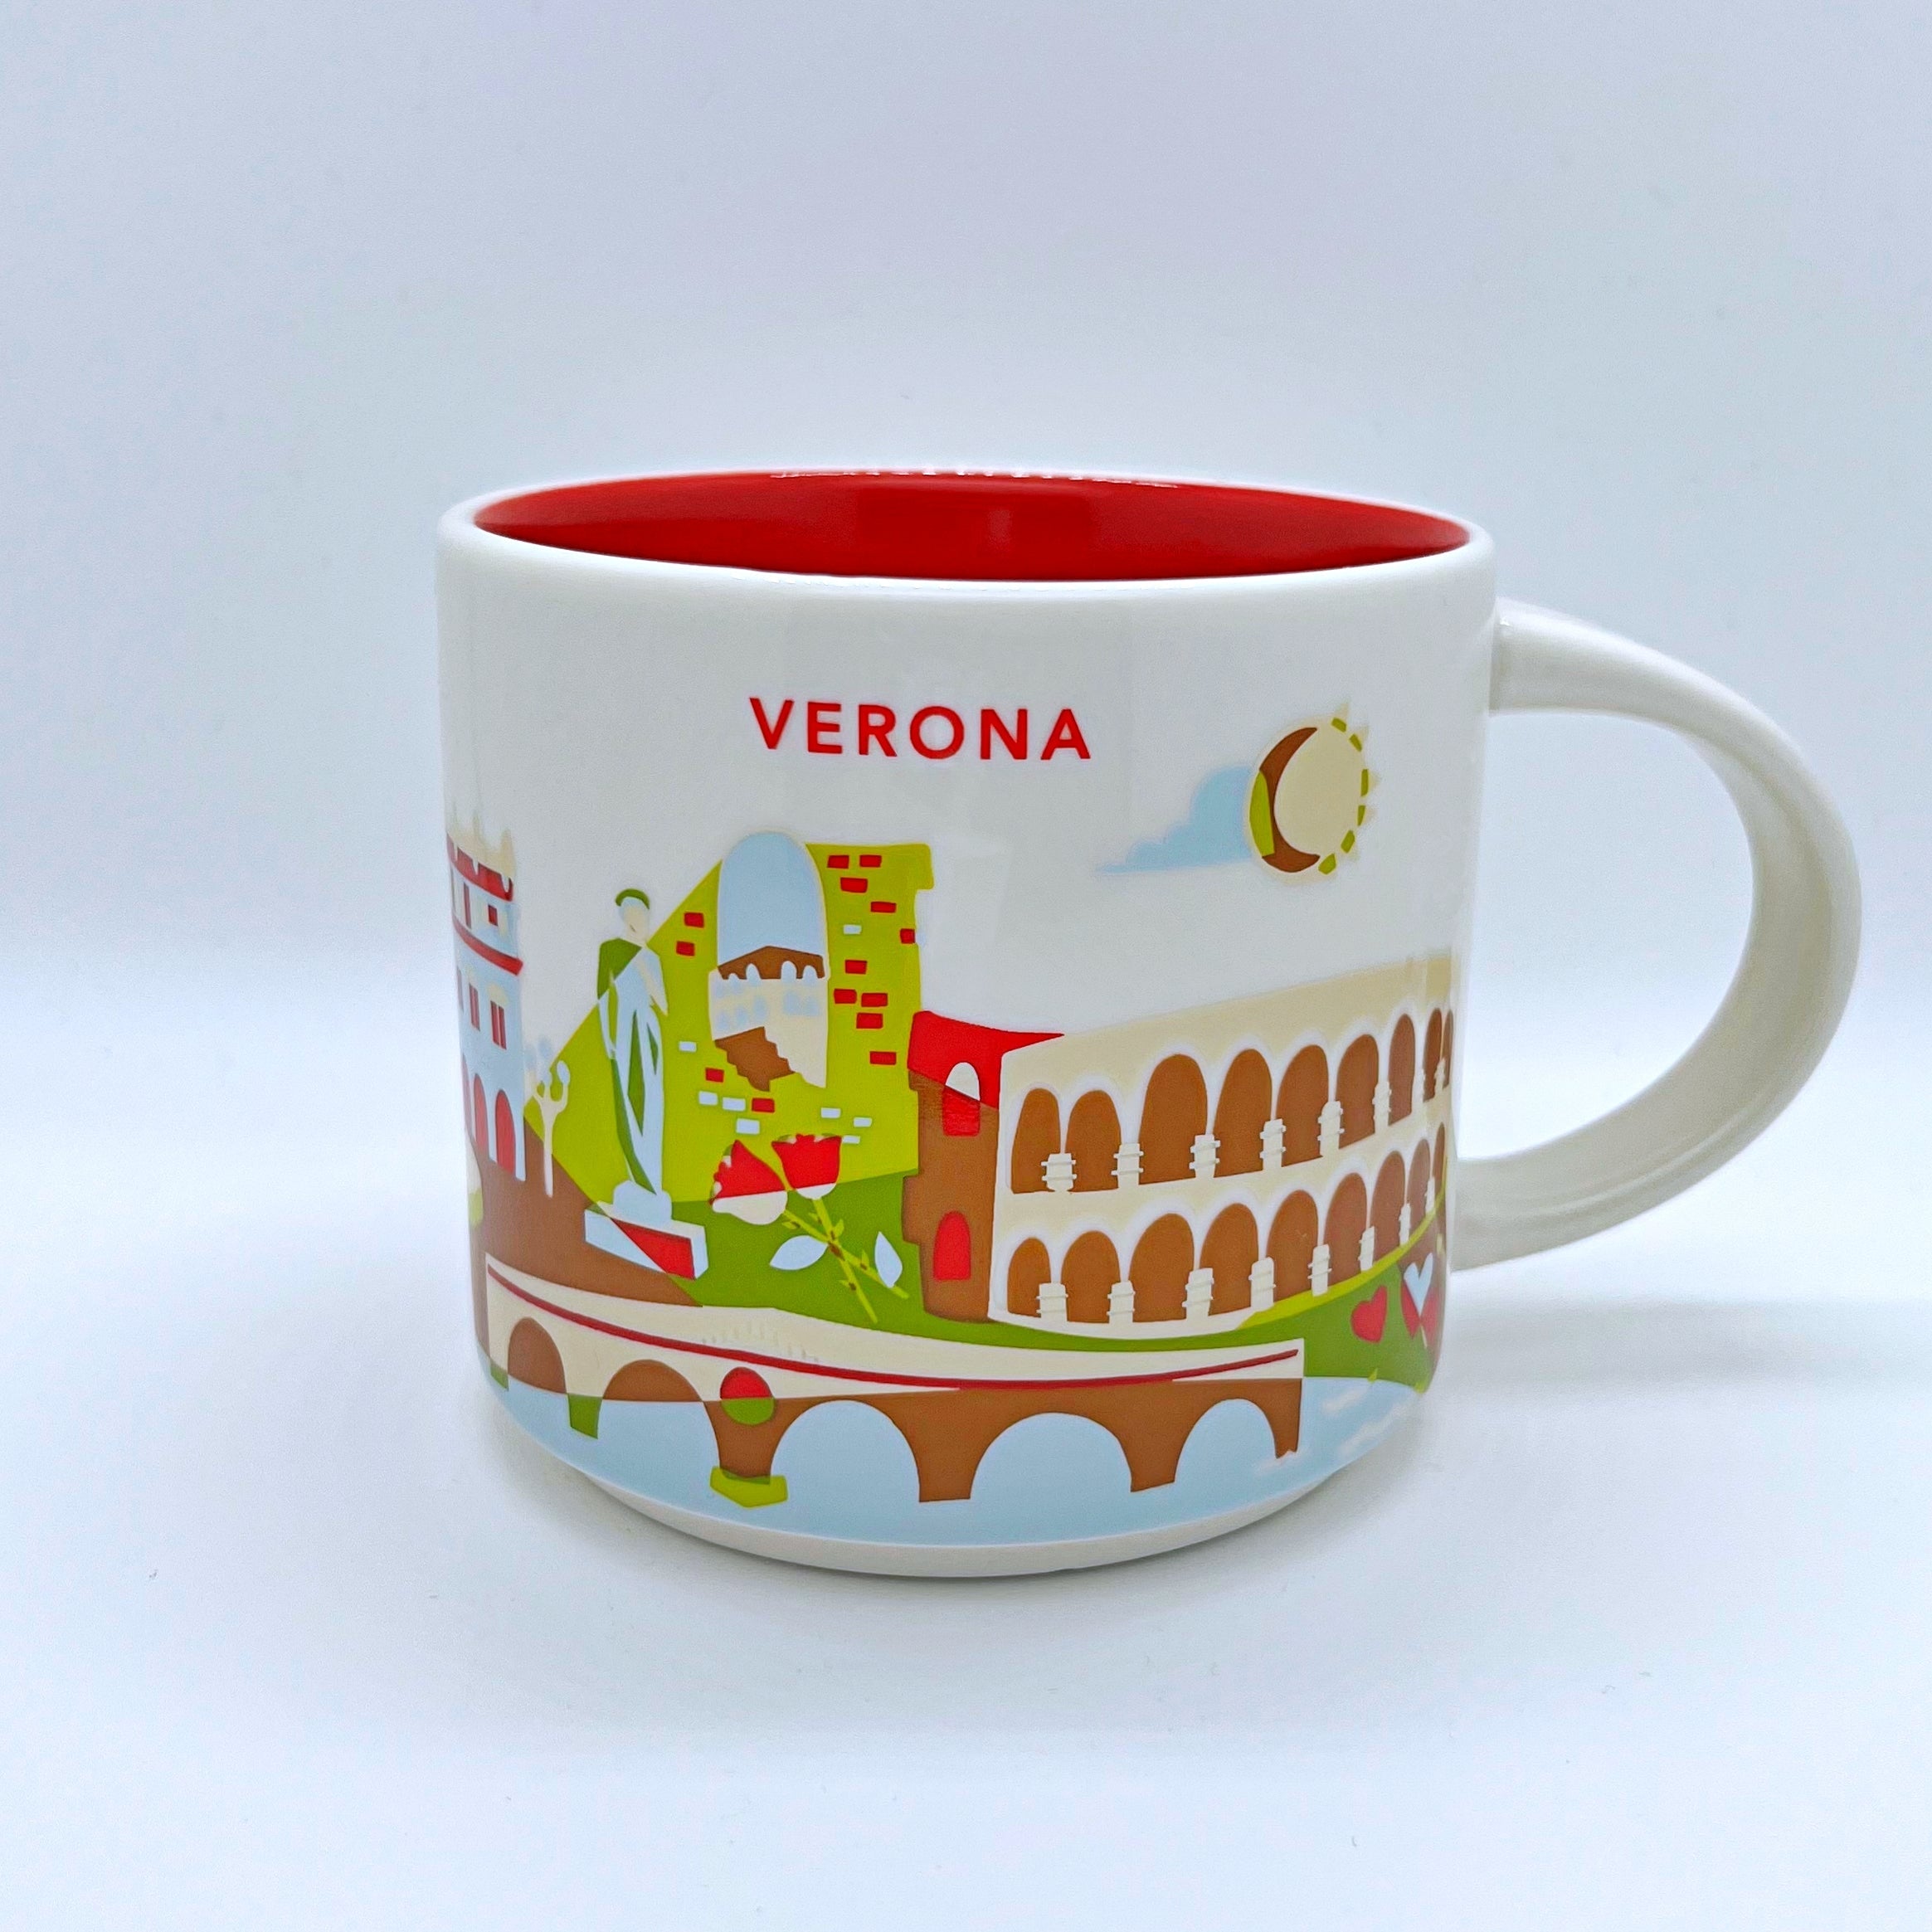 Kaffee Tee oder Cappuccino Tasse von Starbucks mit gemalten Bildern aus der Stadt Verona